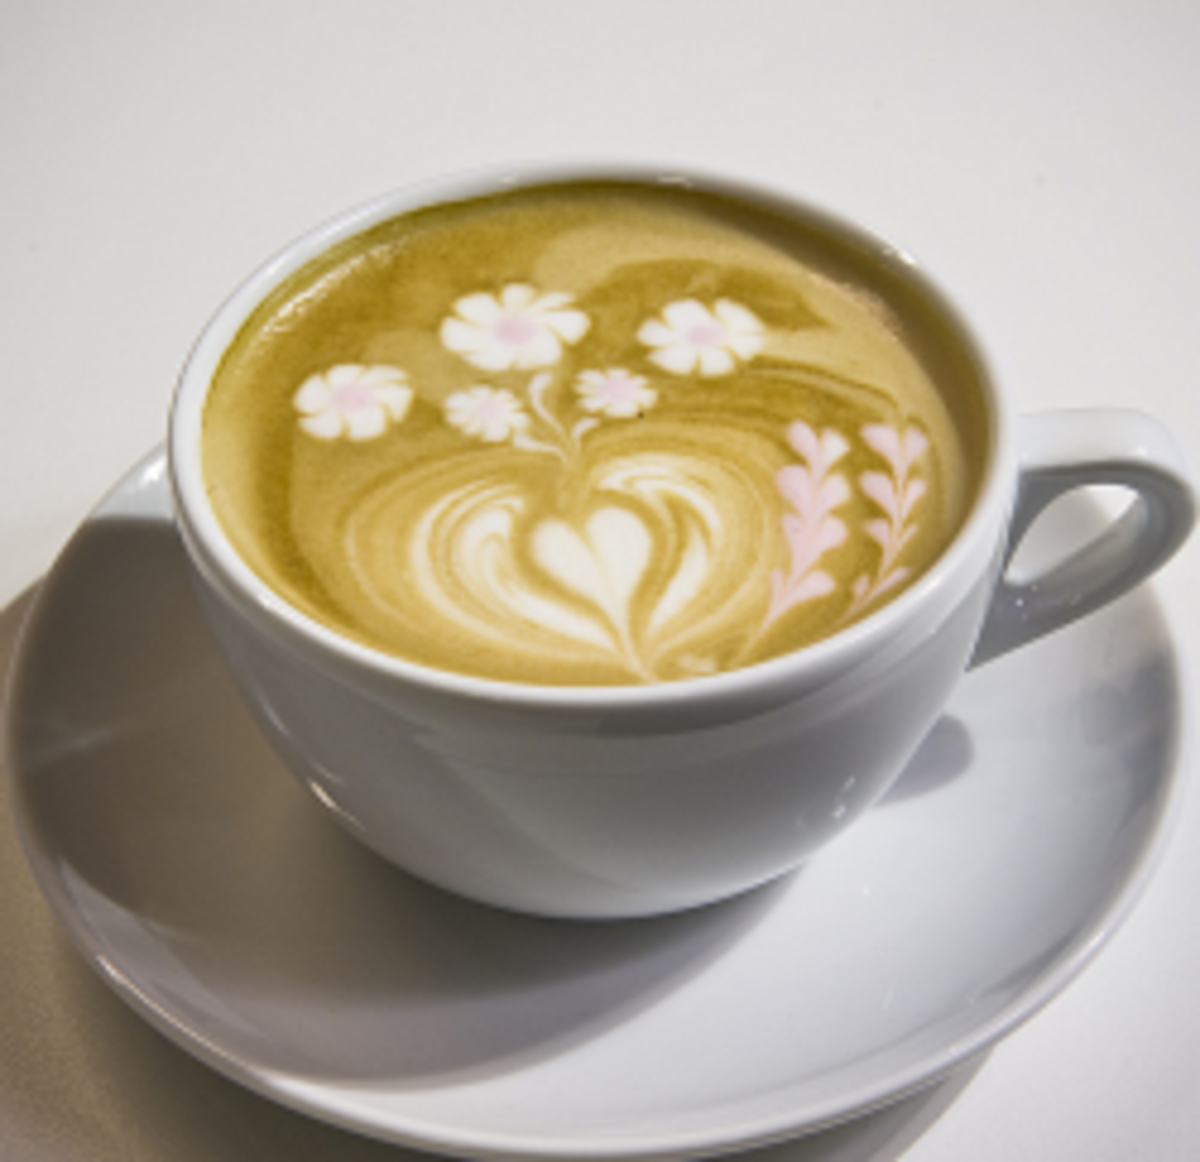 Latte vs Mocha vs Cappuccino, What Are the Differences?